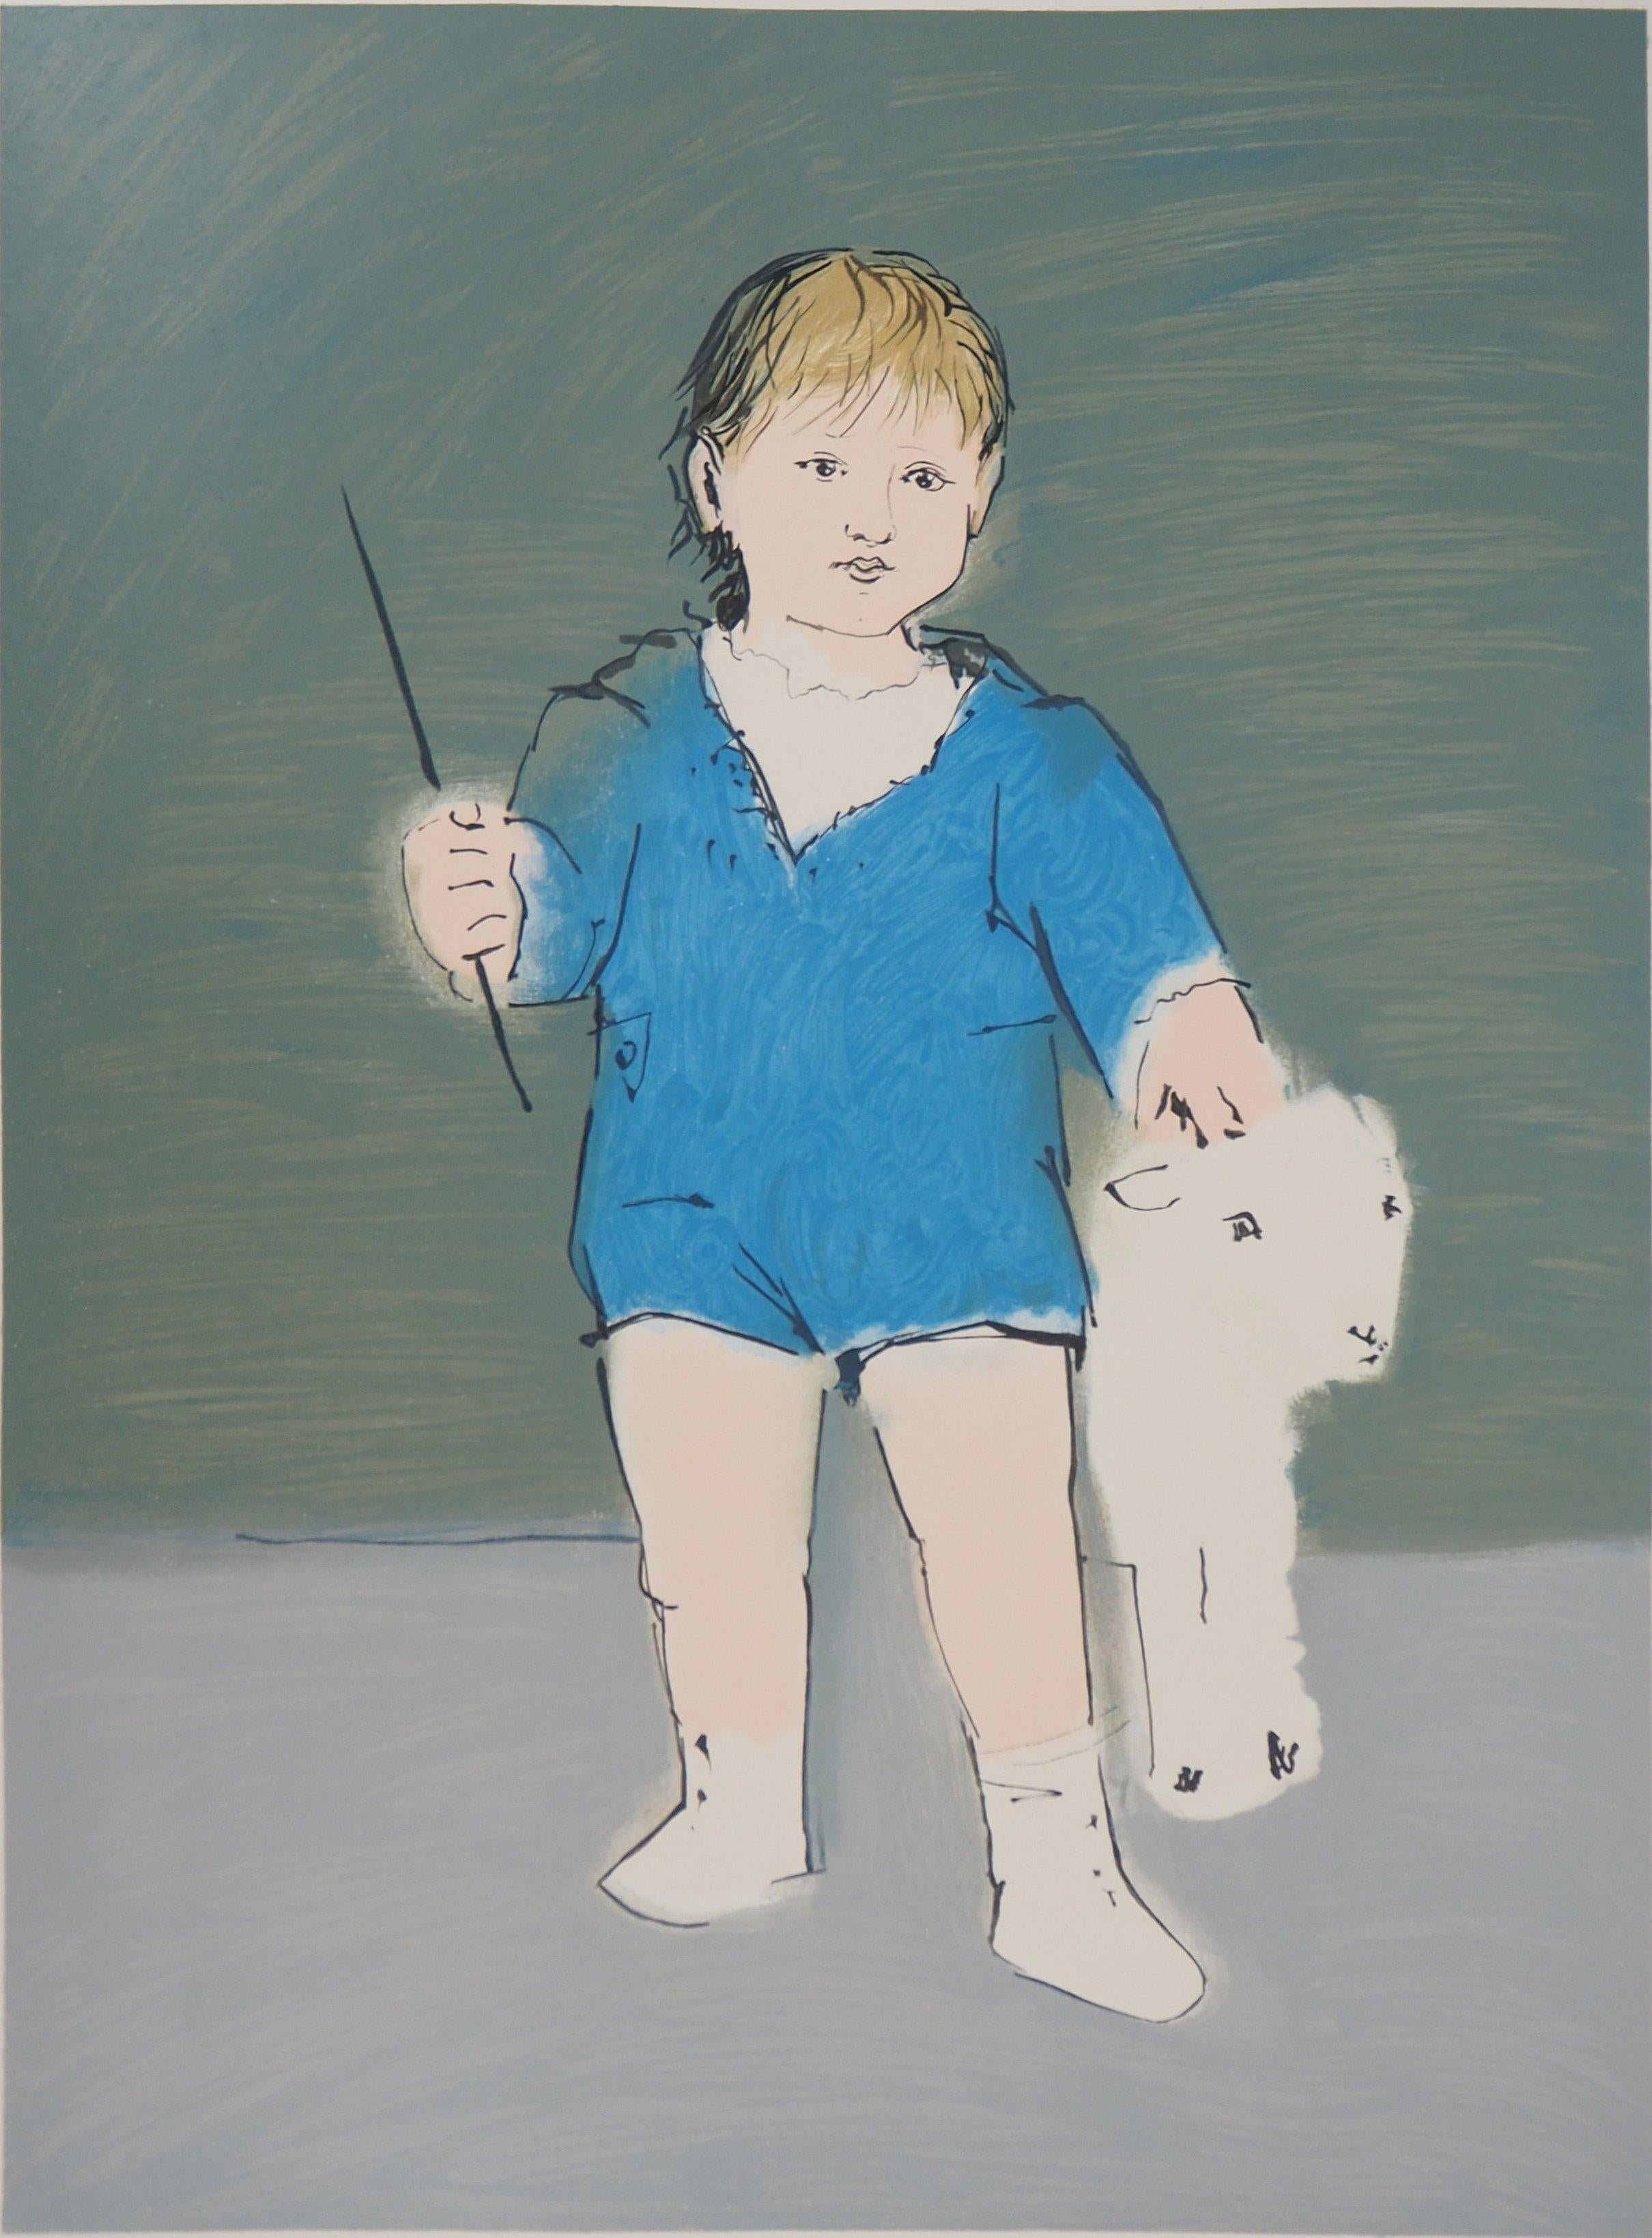 L'enfant avec un agneau - Lithographie (Mourlot) - Print de Pablo Picasso